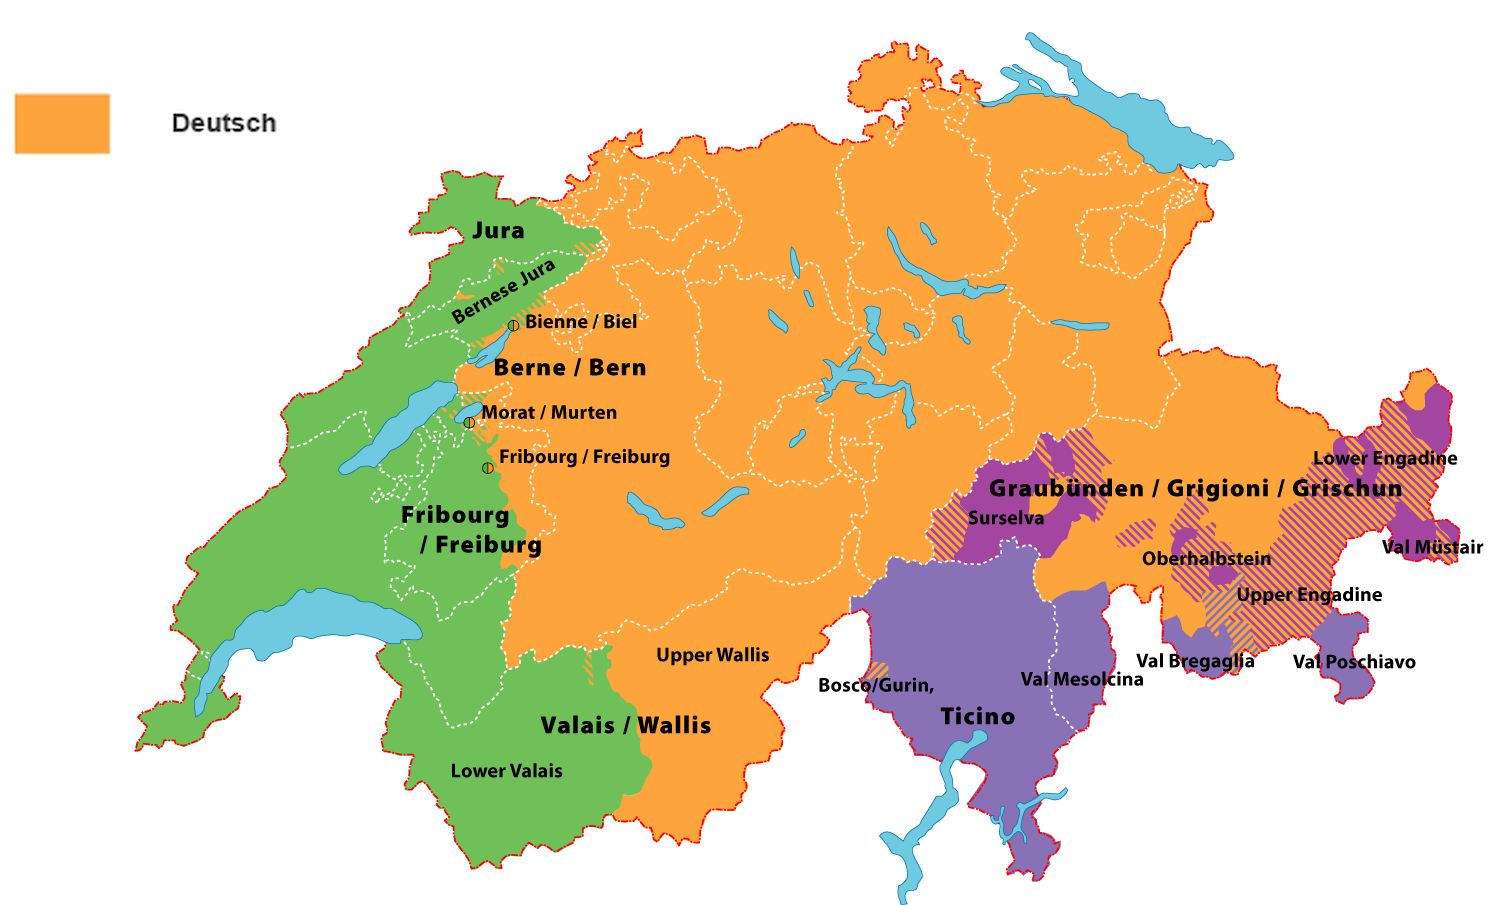 Na slici su označena 4 službena jezika koja se govore u Švicarskoj: njemački, talijanski, francuski i retoromanski.